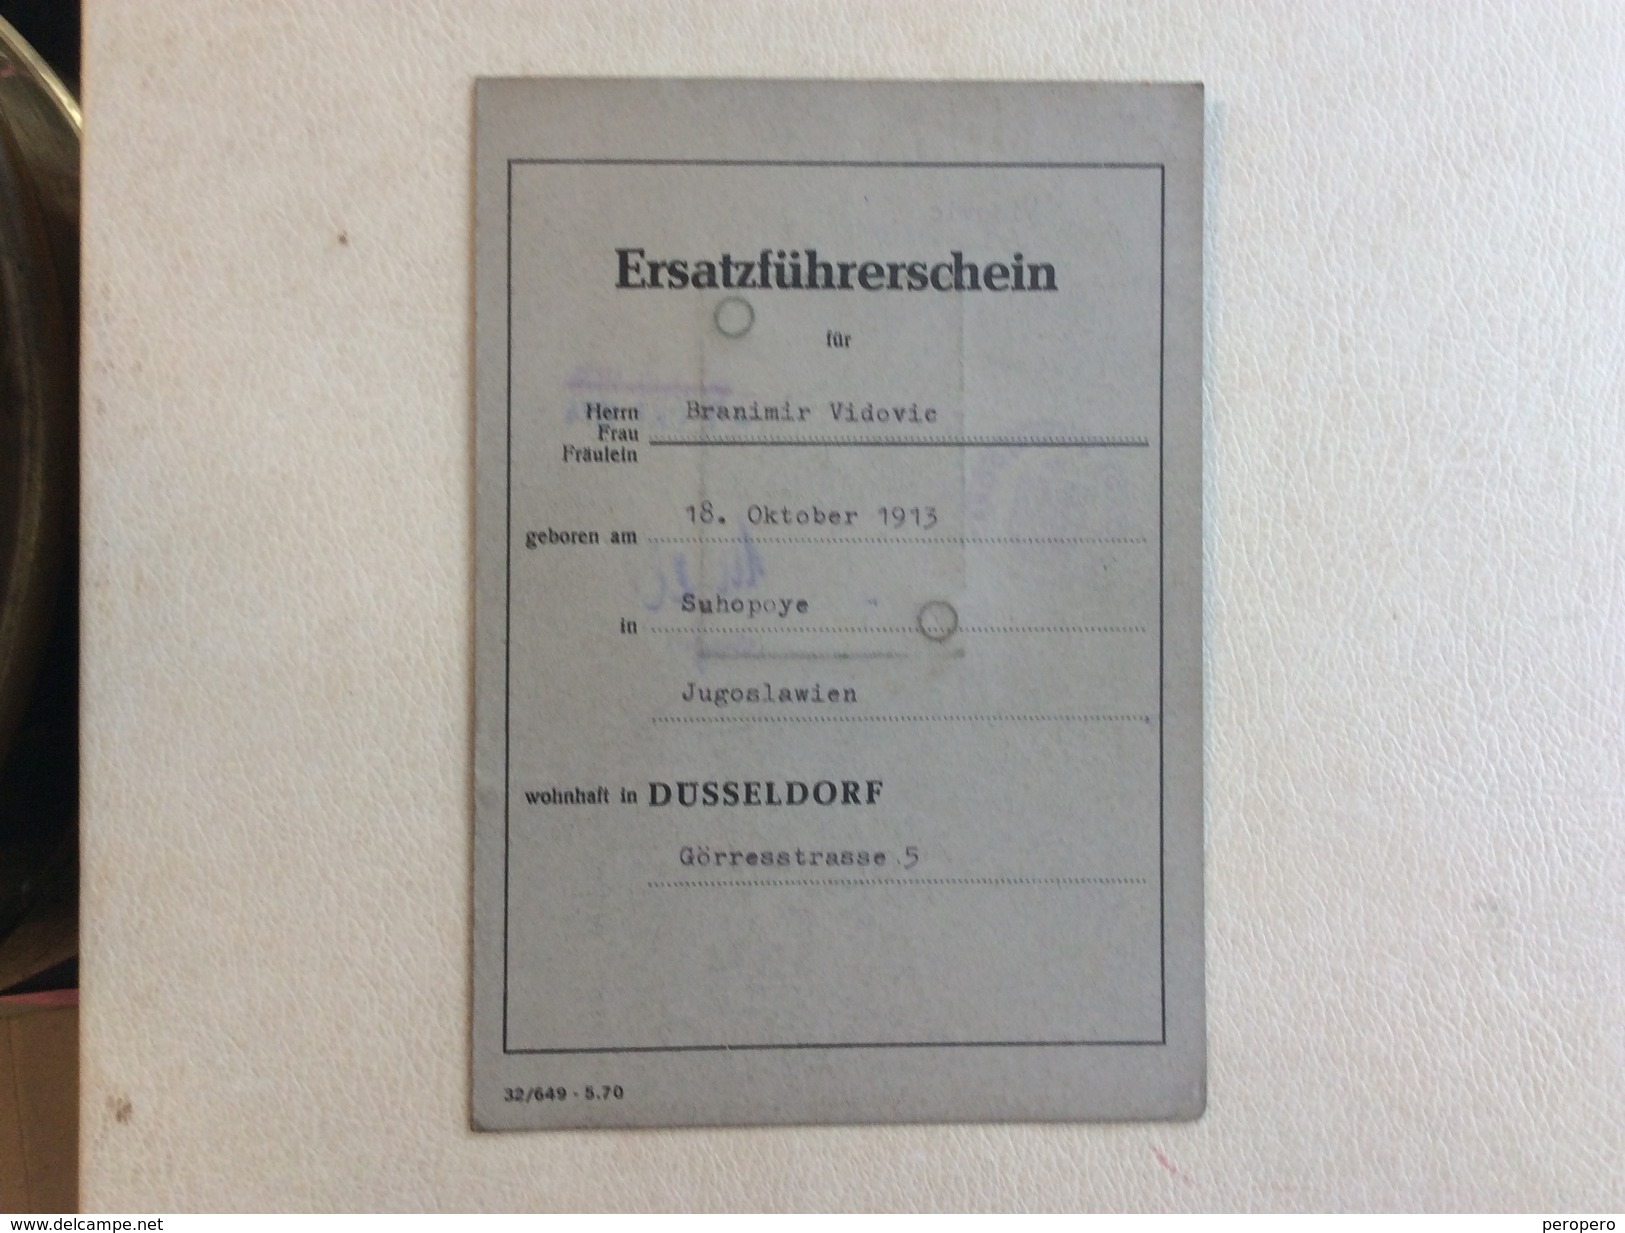 ERSATZFÜHRERSCHEIN STADT DÜSSELDORF  1974. - Historische Dokumente